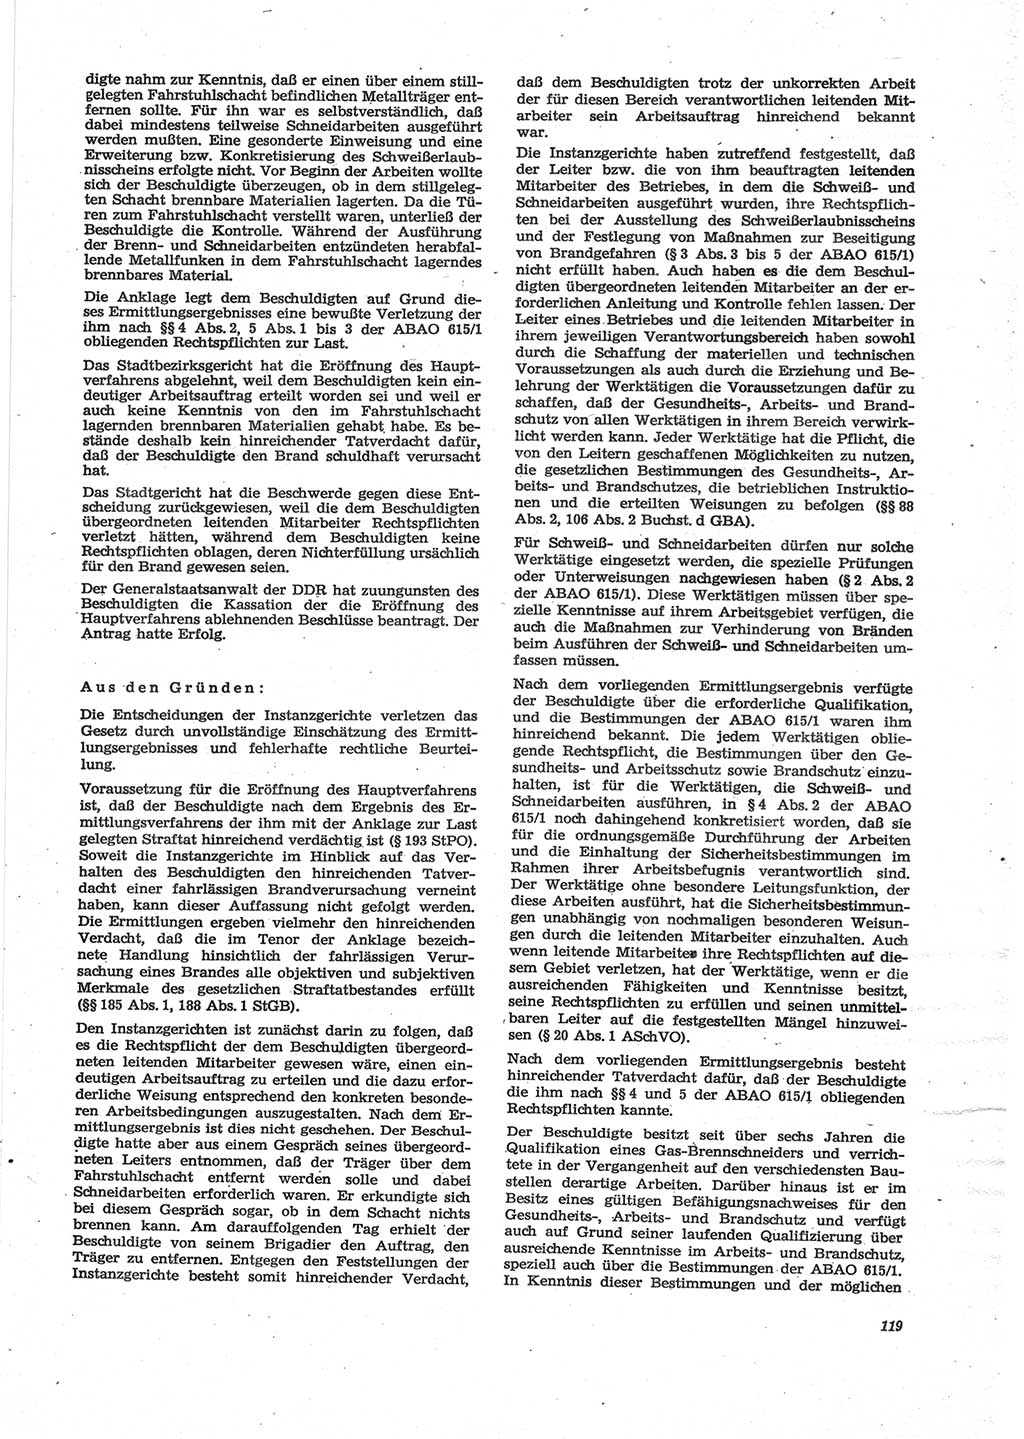 Neue Justiz (NJ), Zeitschrift für Recht und Rechtswissenschaft [Deutsche Demokratische Republik (DDR)], 28. Jahrgang 1974, Seite 119 (NJ DDR 1974, S. 119)